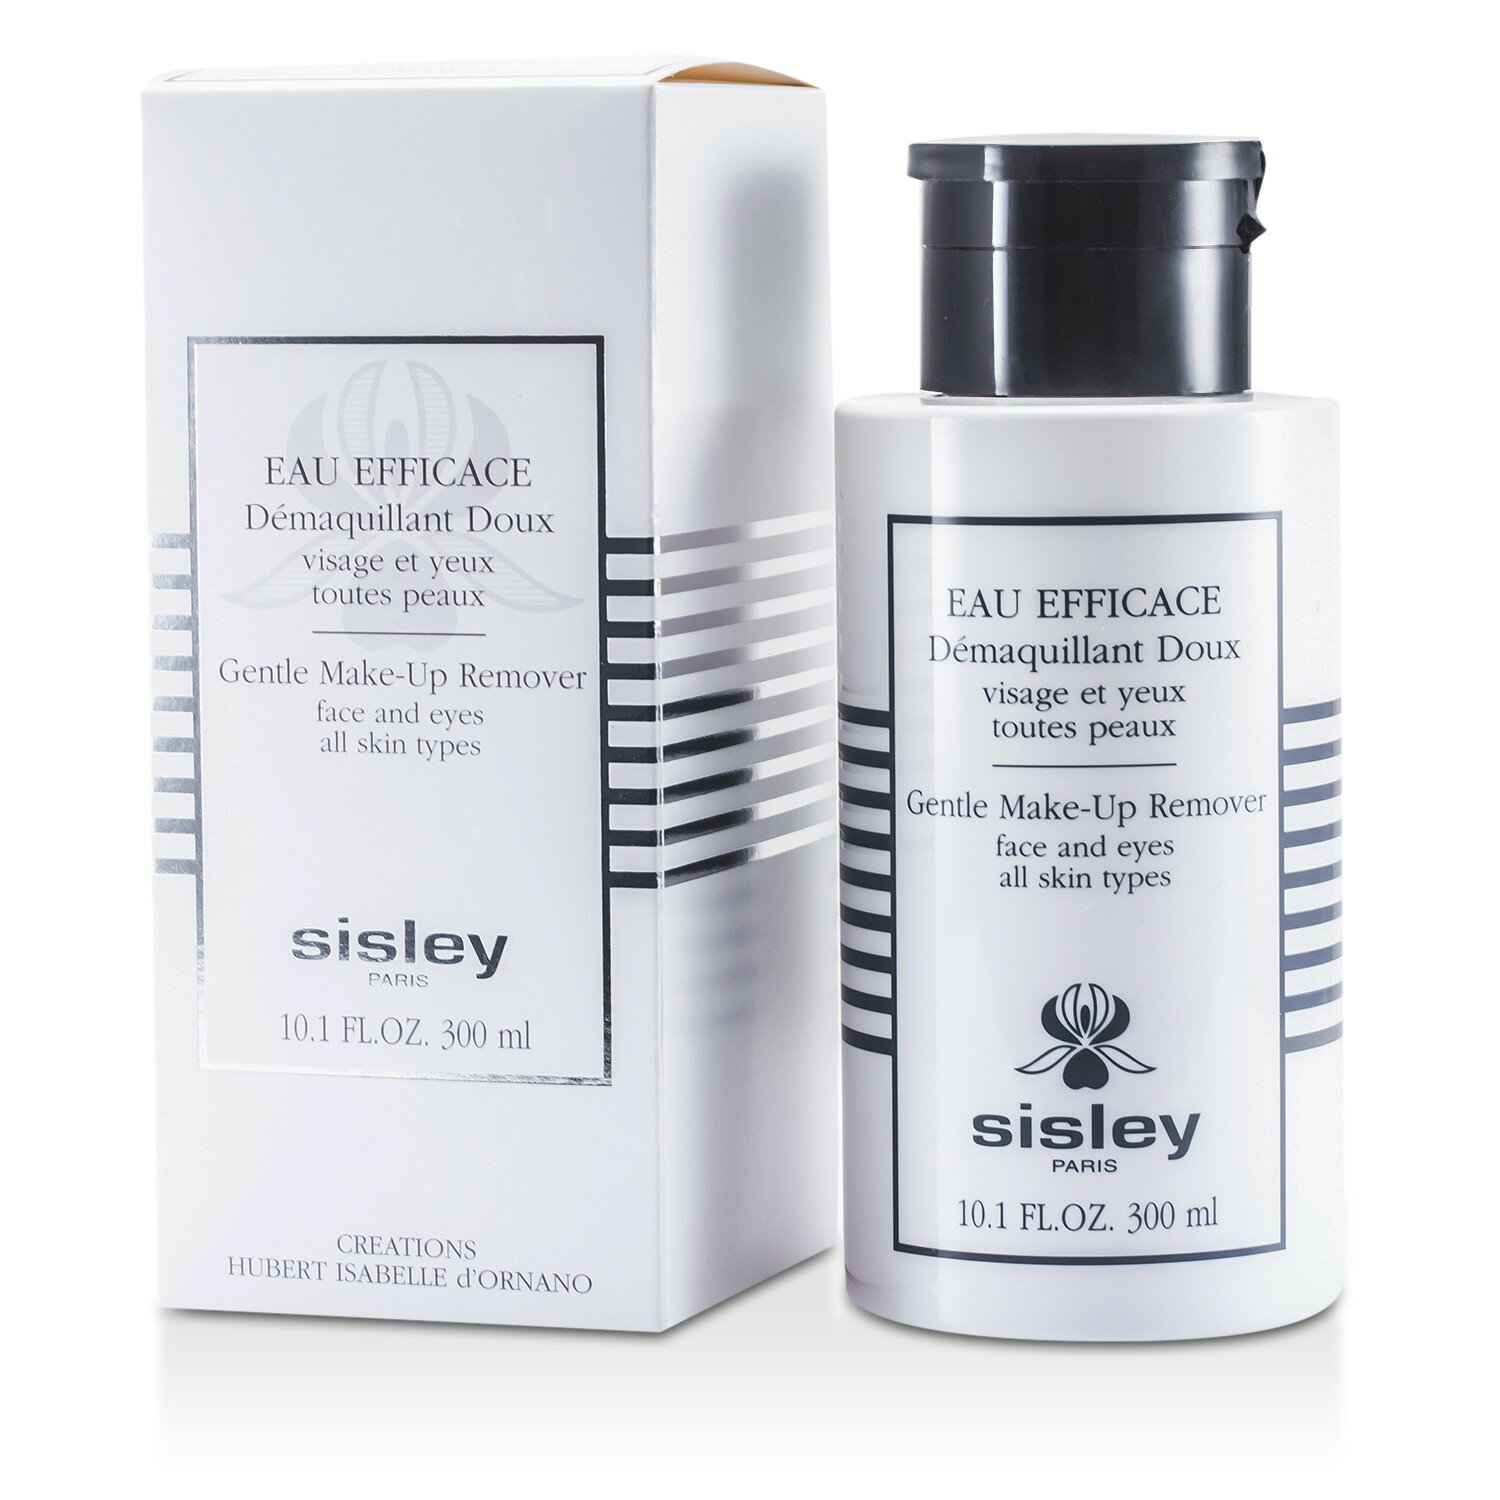 希思黎 Sisley - 極淨植物保養卸妝液